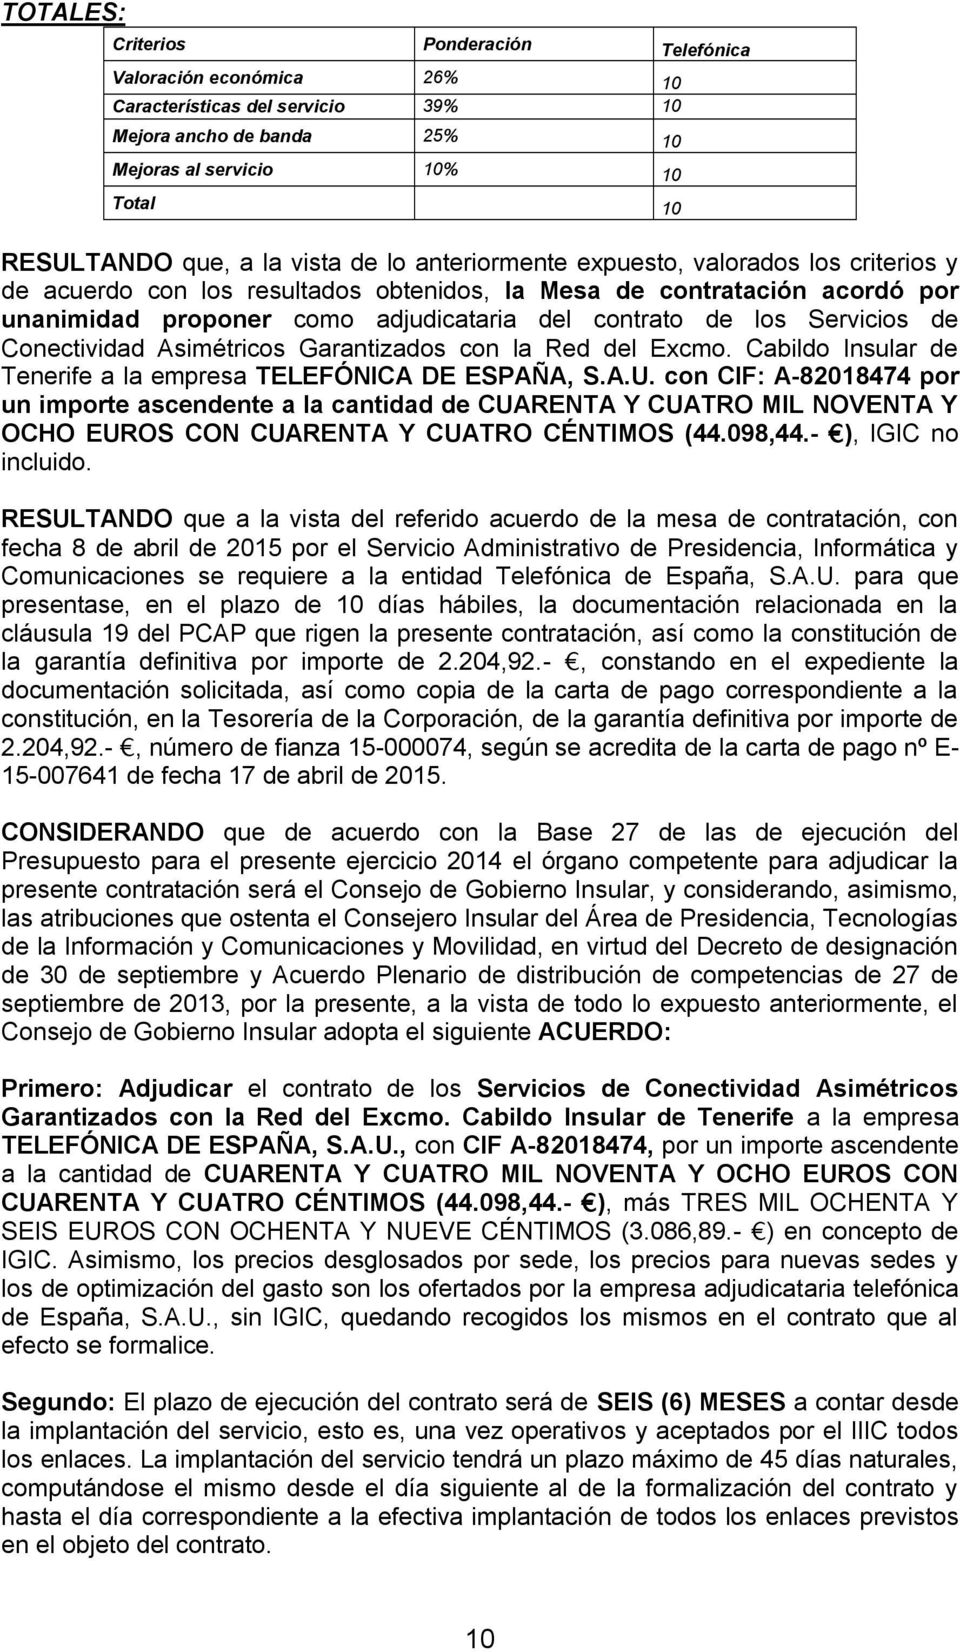 Servicios de Conectividad Asimétricos Garantizados con la Red del Excmo. Cabildo Insular de Tenerife a la empresa TELEFÓNICA DE ESPAÑA, S.A.U.